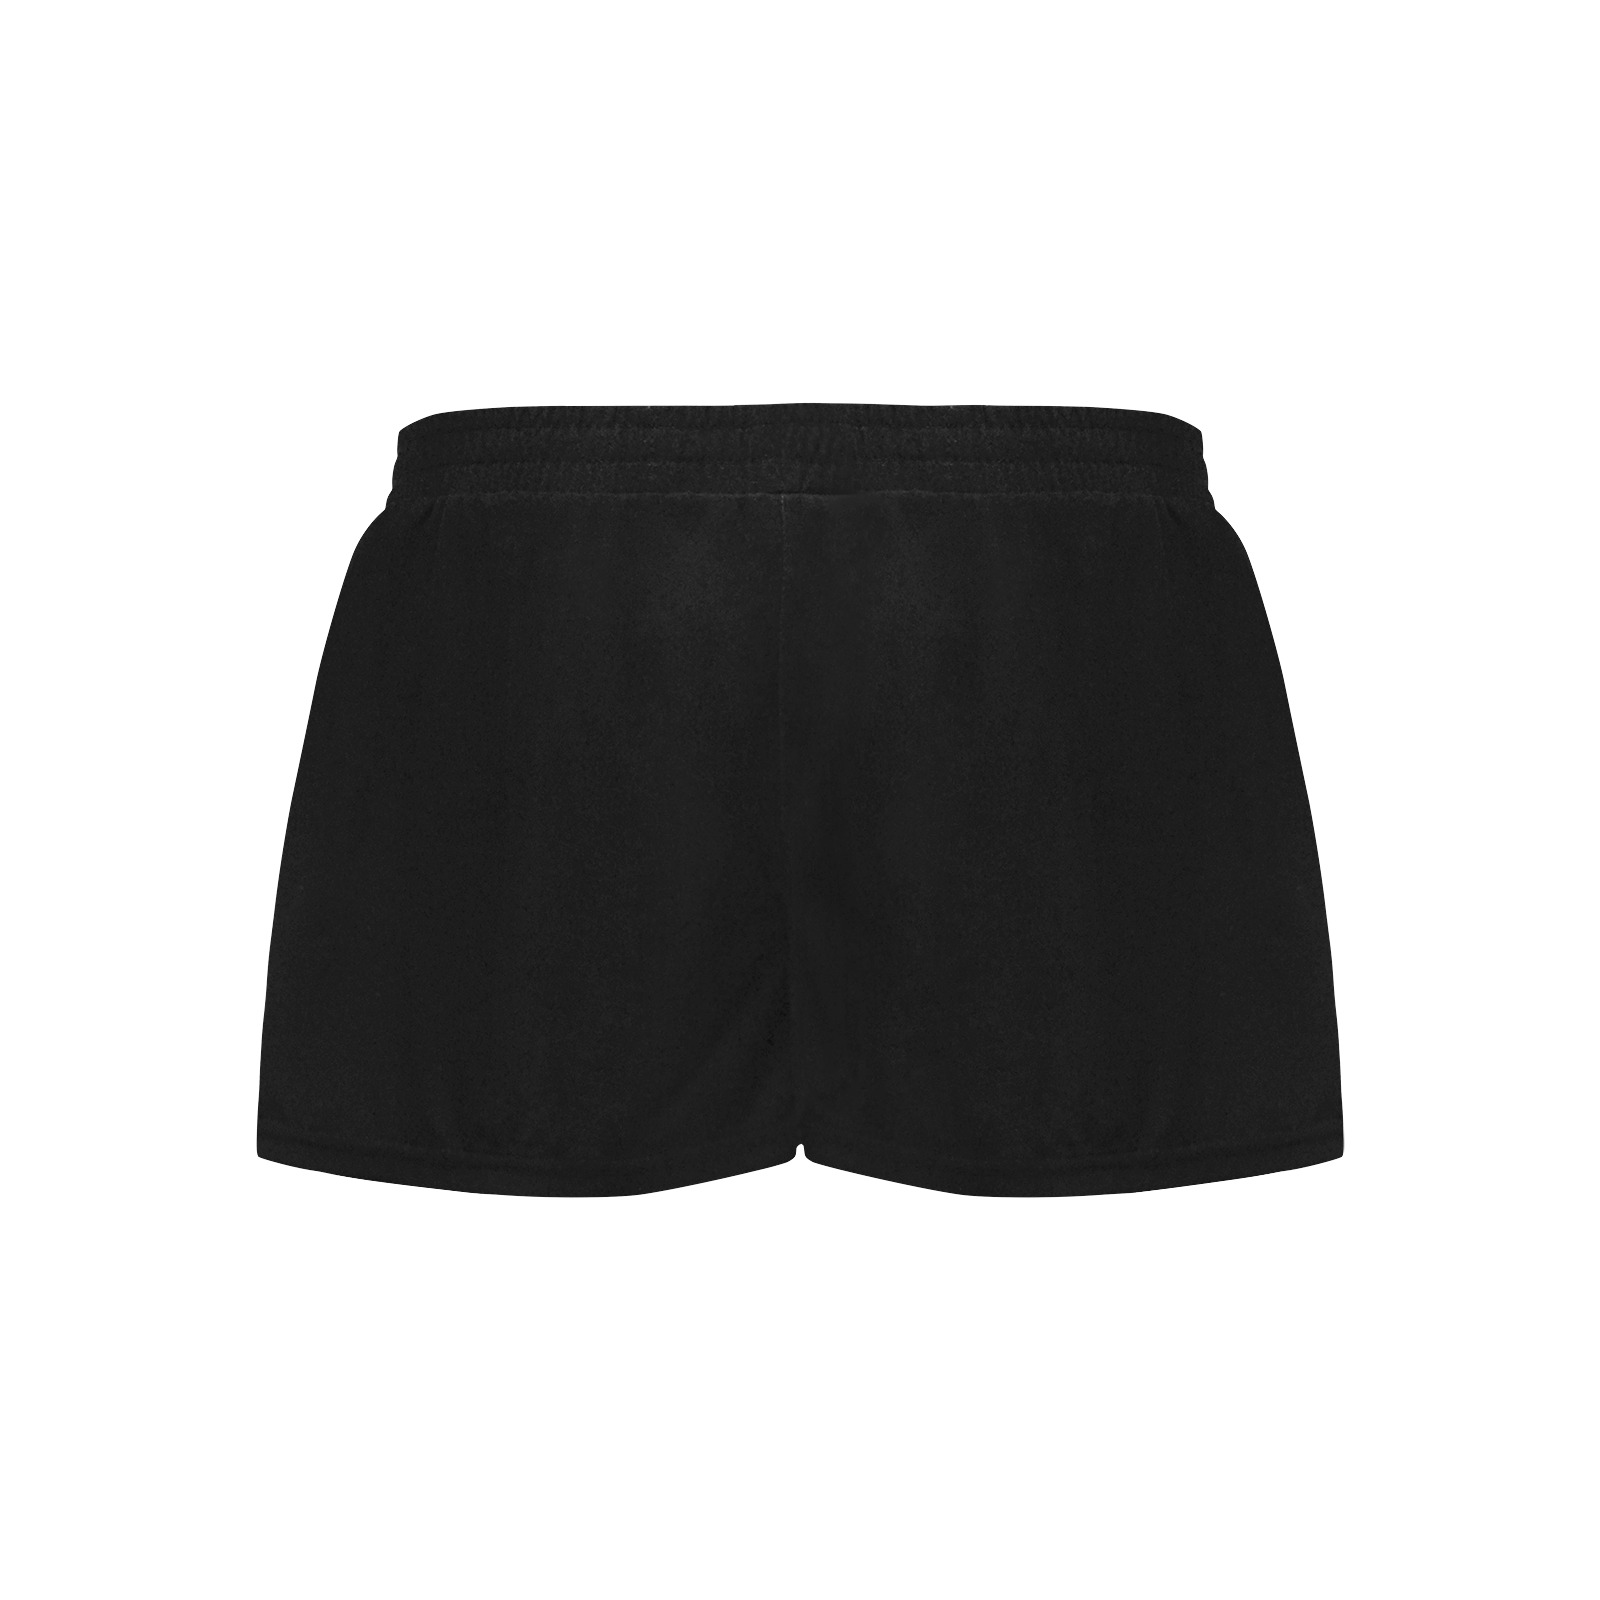 Shorts black with single logo Women's Pajama Shorts